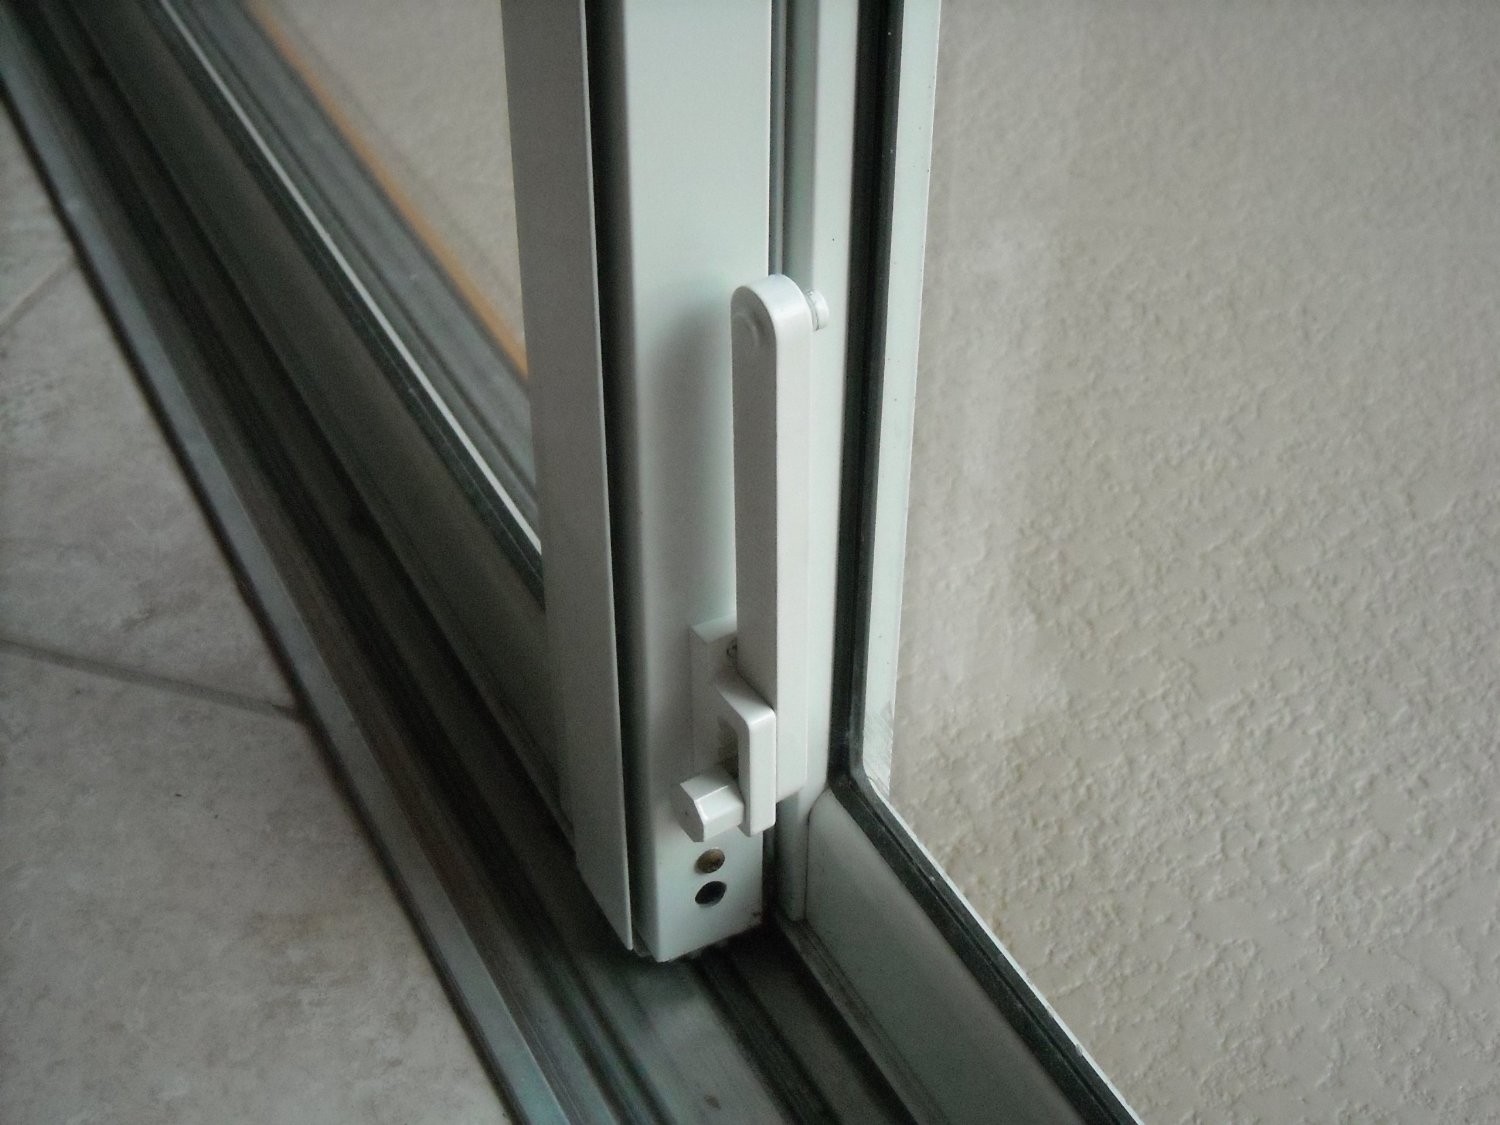 Most Secure Sliding Patio DoorMost Secure Sliding Patio Door